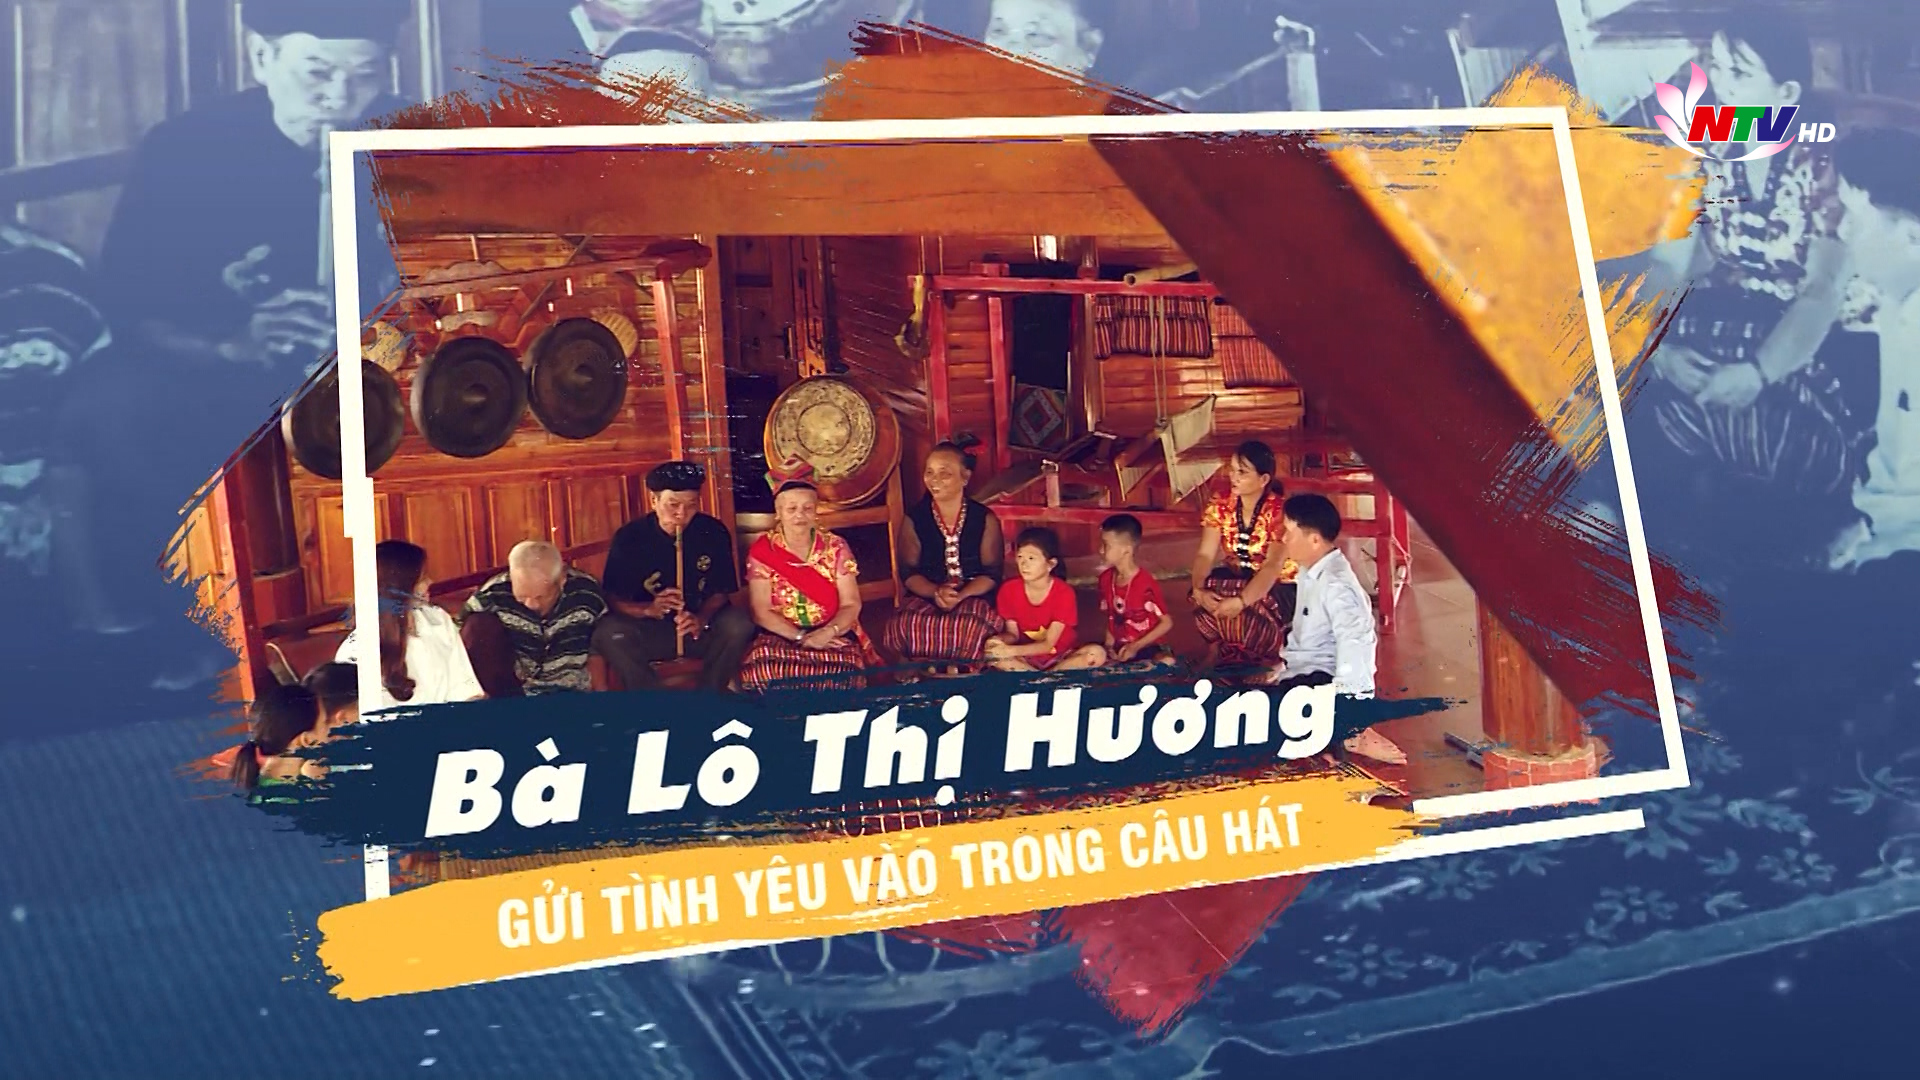 Trò chuyện cuối tuần: Bà Lô Thị Hương - Gửi tình yêu vào trong câu hát